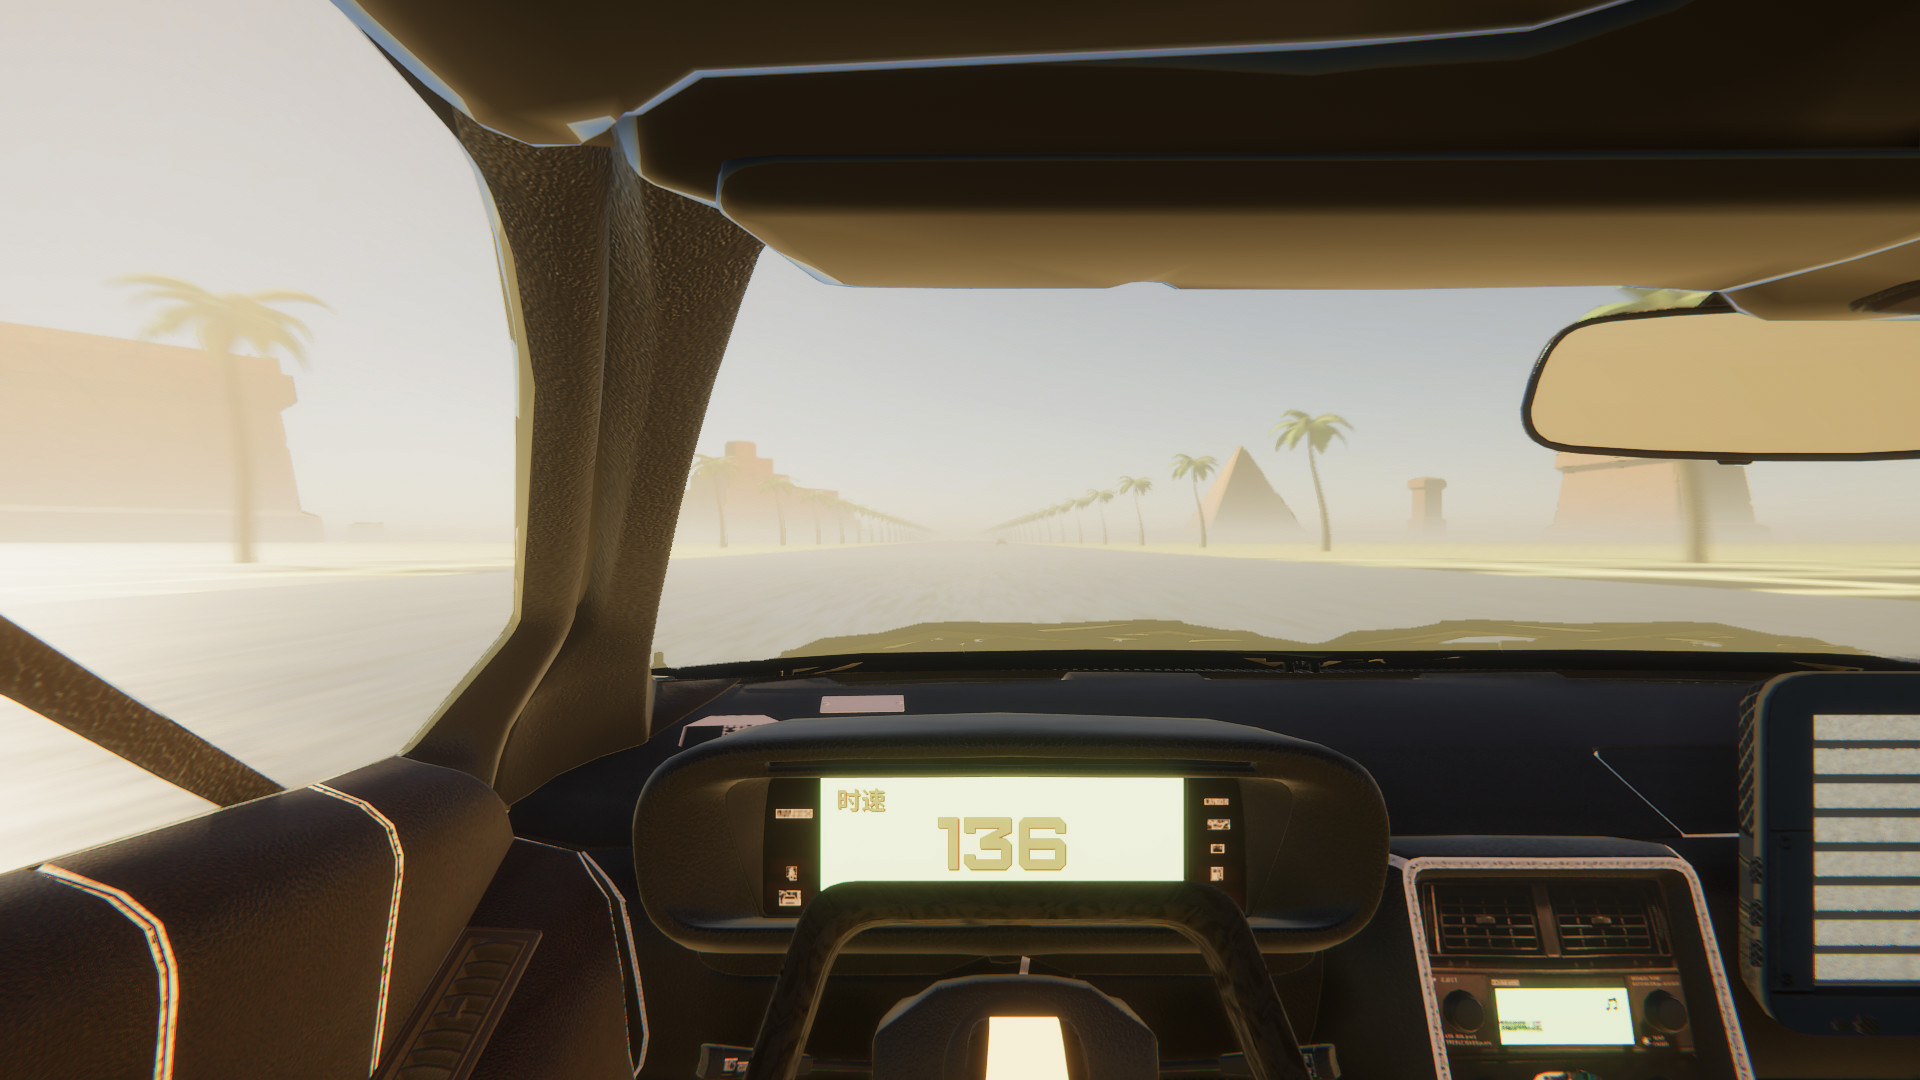 Vaporwave Road VR screenshot